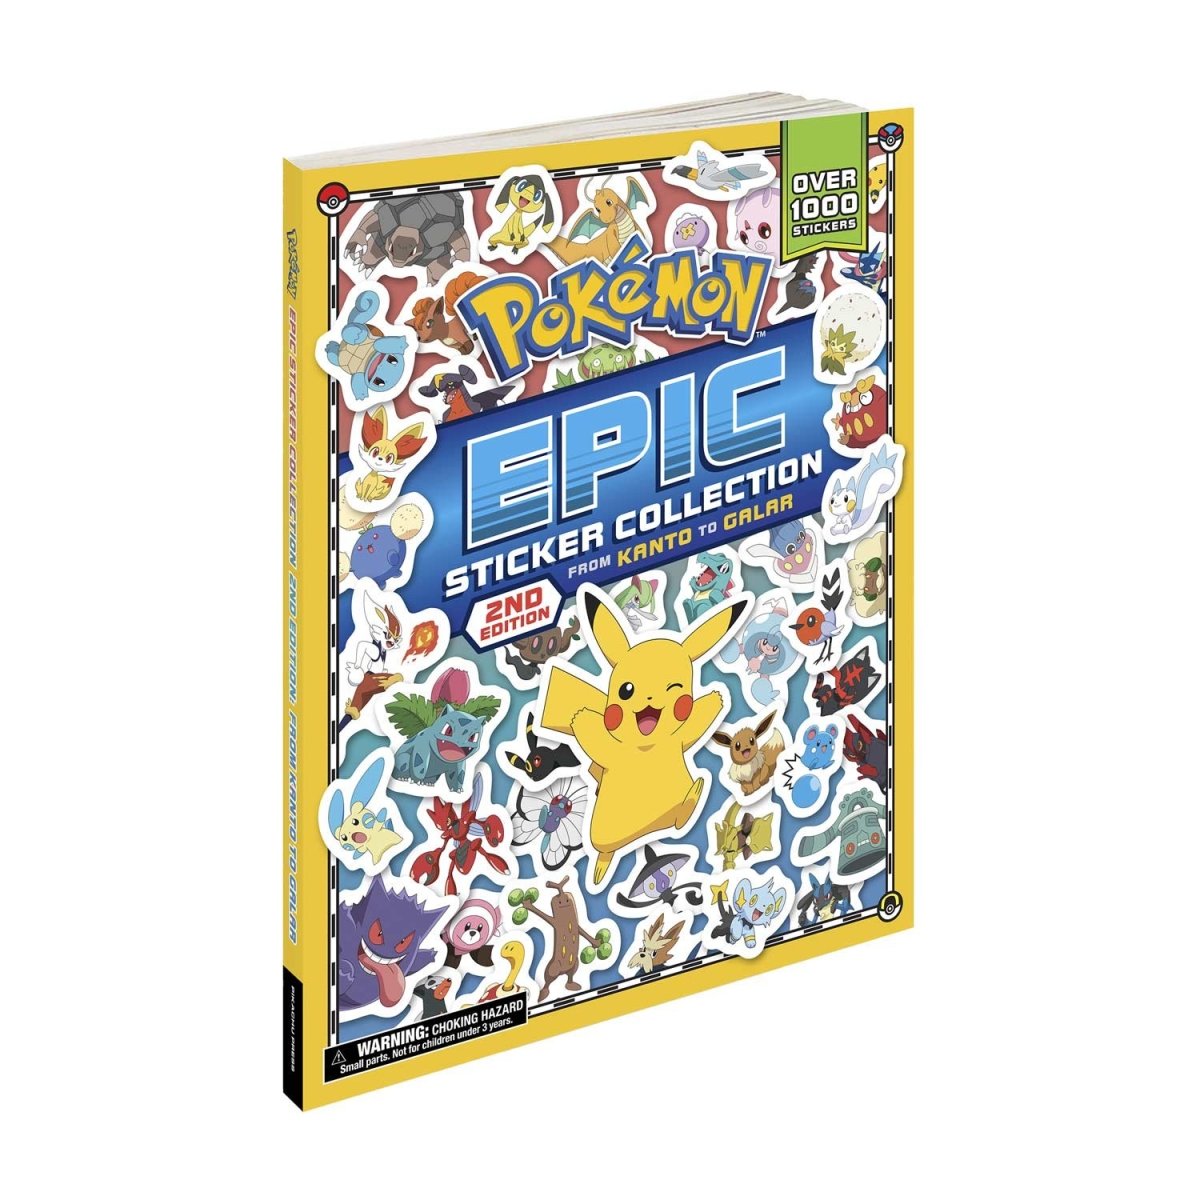 Pokemon Aufkleber Katalog - LastDodo